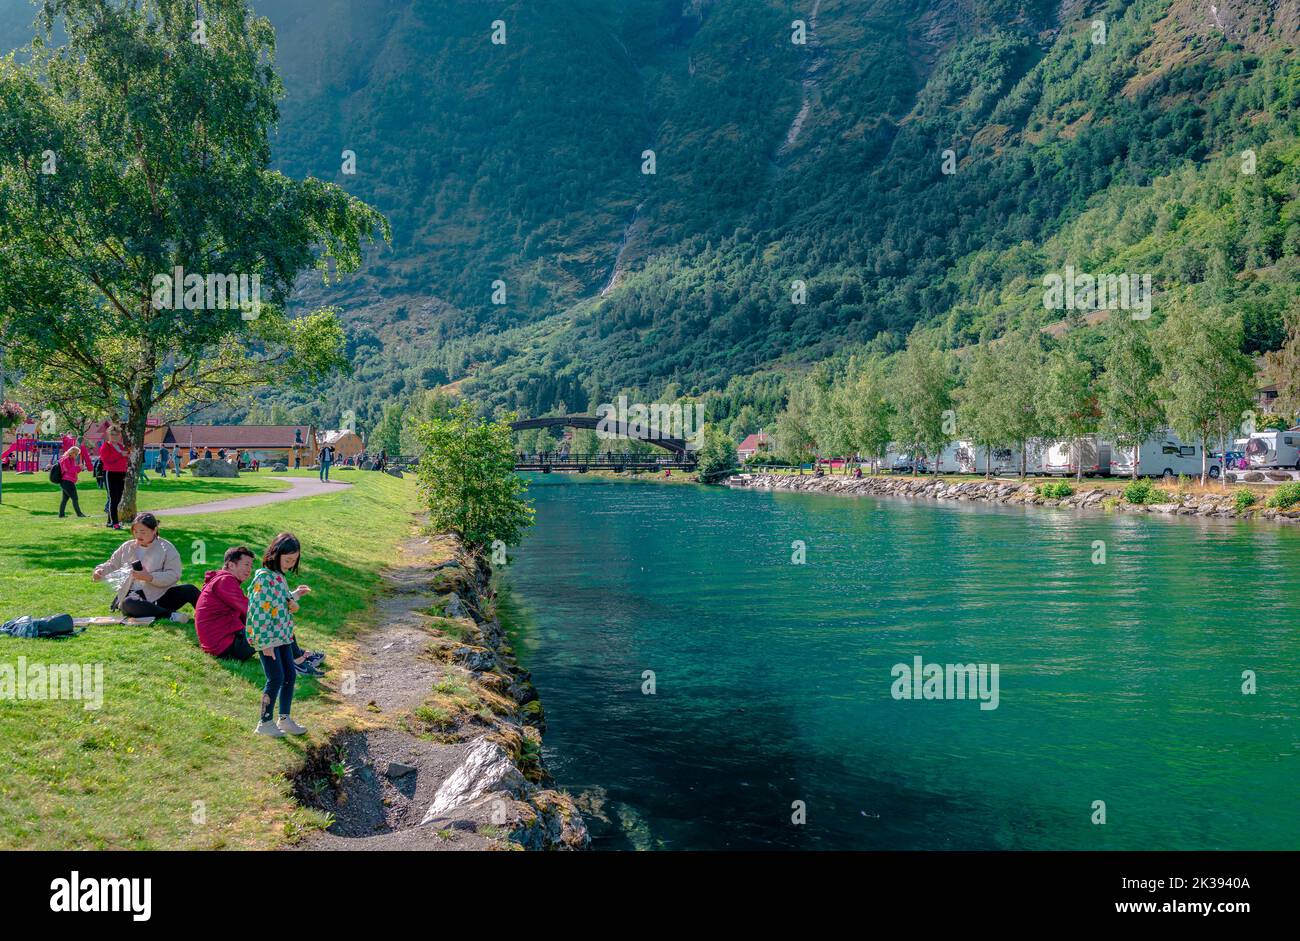 Flåm, Norvegia - 16 2022 agosto: Le persone godono di una giornata estiva sul fiume Flam, nella contea di Vestland. Flåm è un villaggio situato all'estremità interna del Th Foto Stock